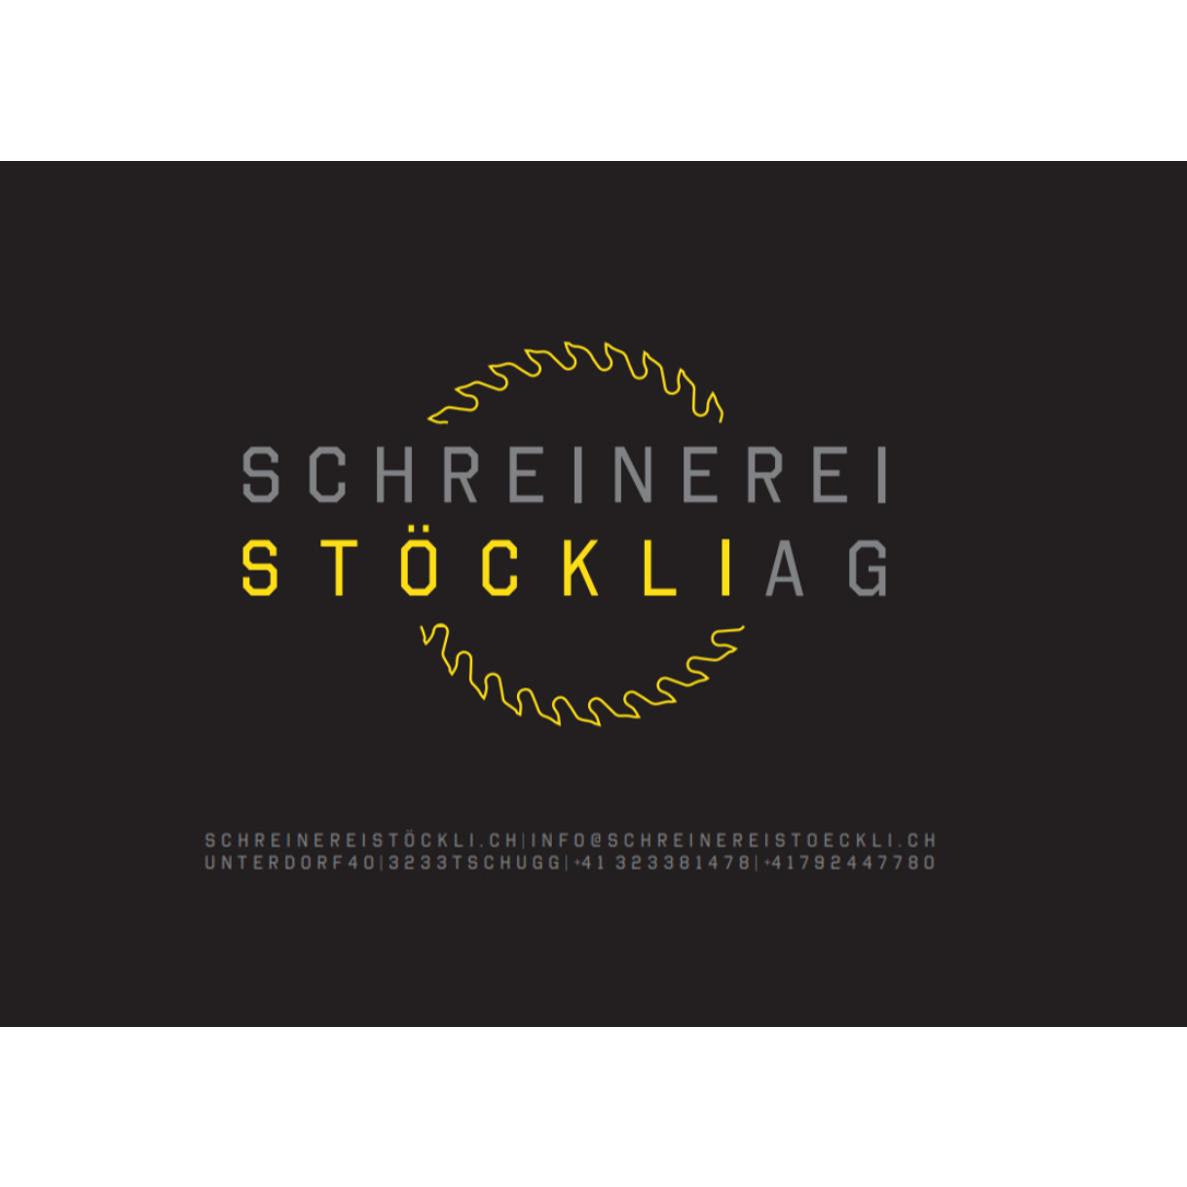 Schreinerei Stöckli AG Logo